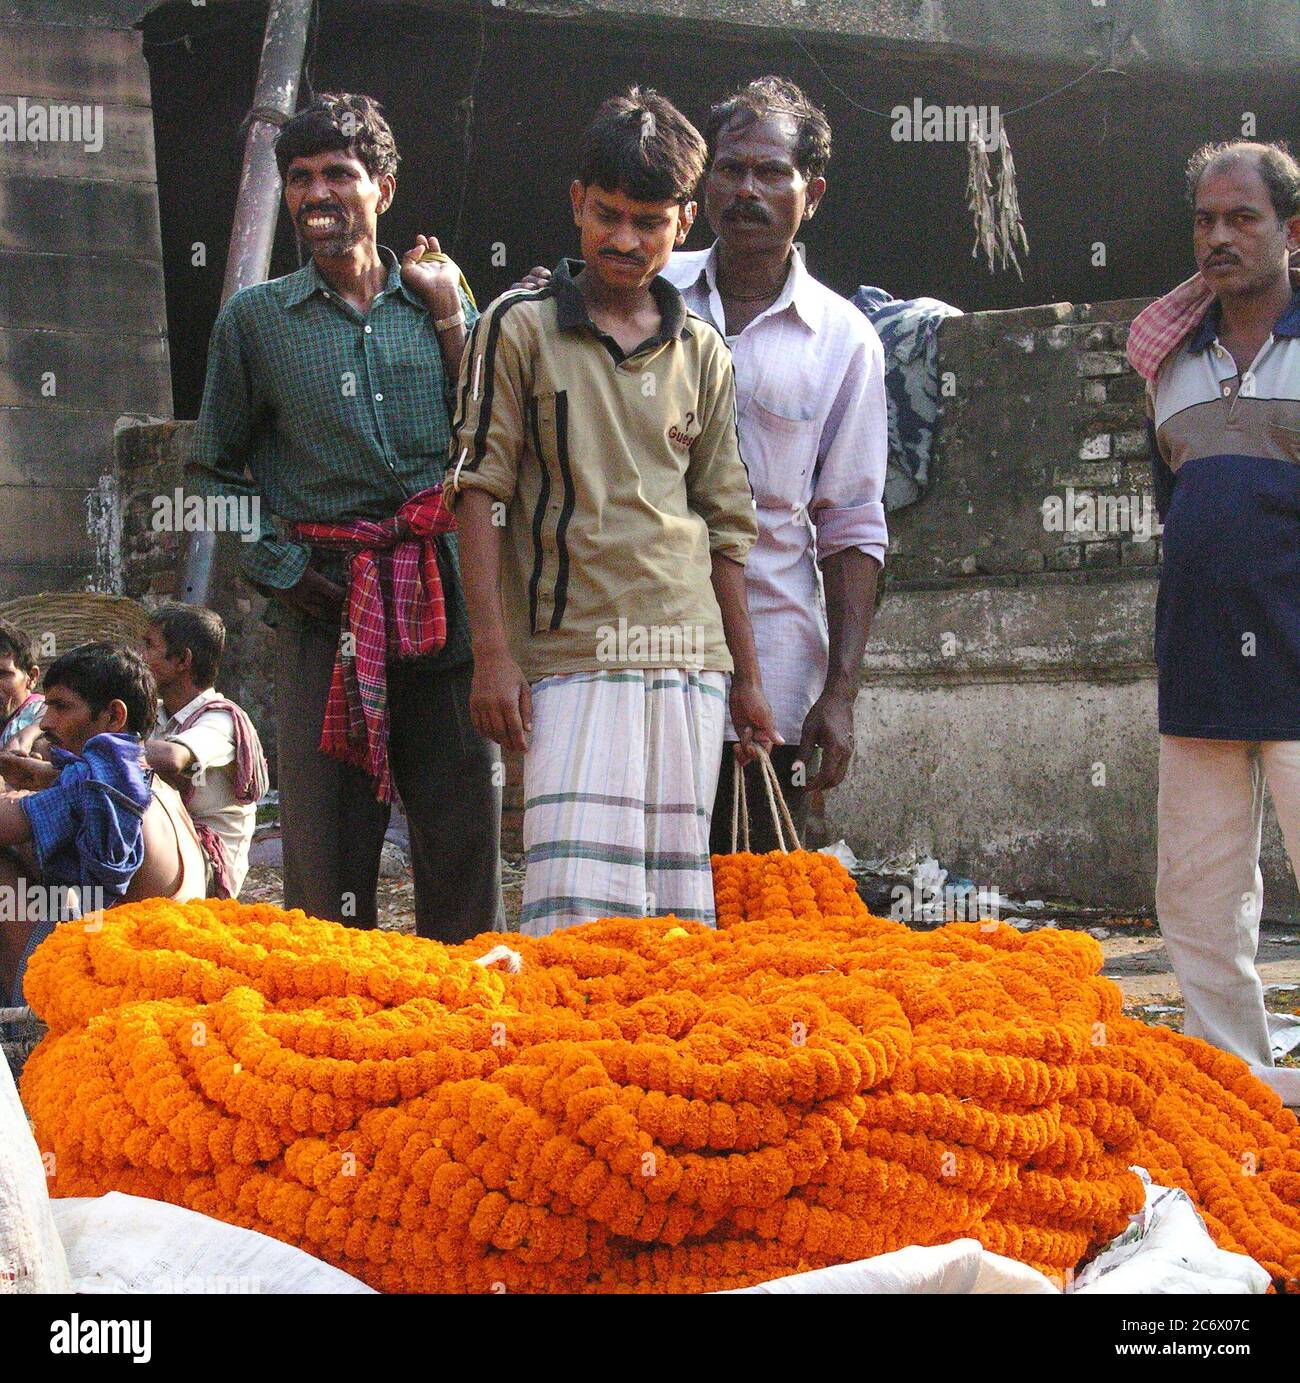 Une exposition de Marigold, au marché aux fleurs de Mullickghaat, l'un des plus anciens marchés aux fleurs de Kolkata, en Inde. 5 novembre 2007. Banque D'Images